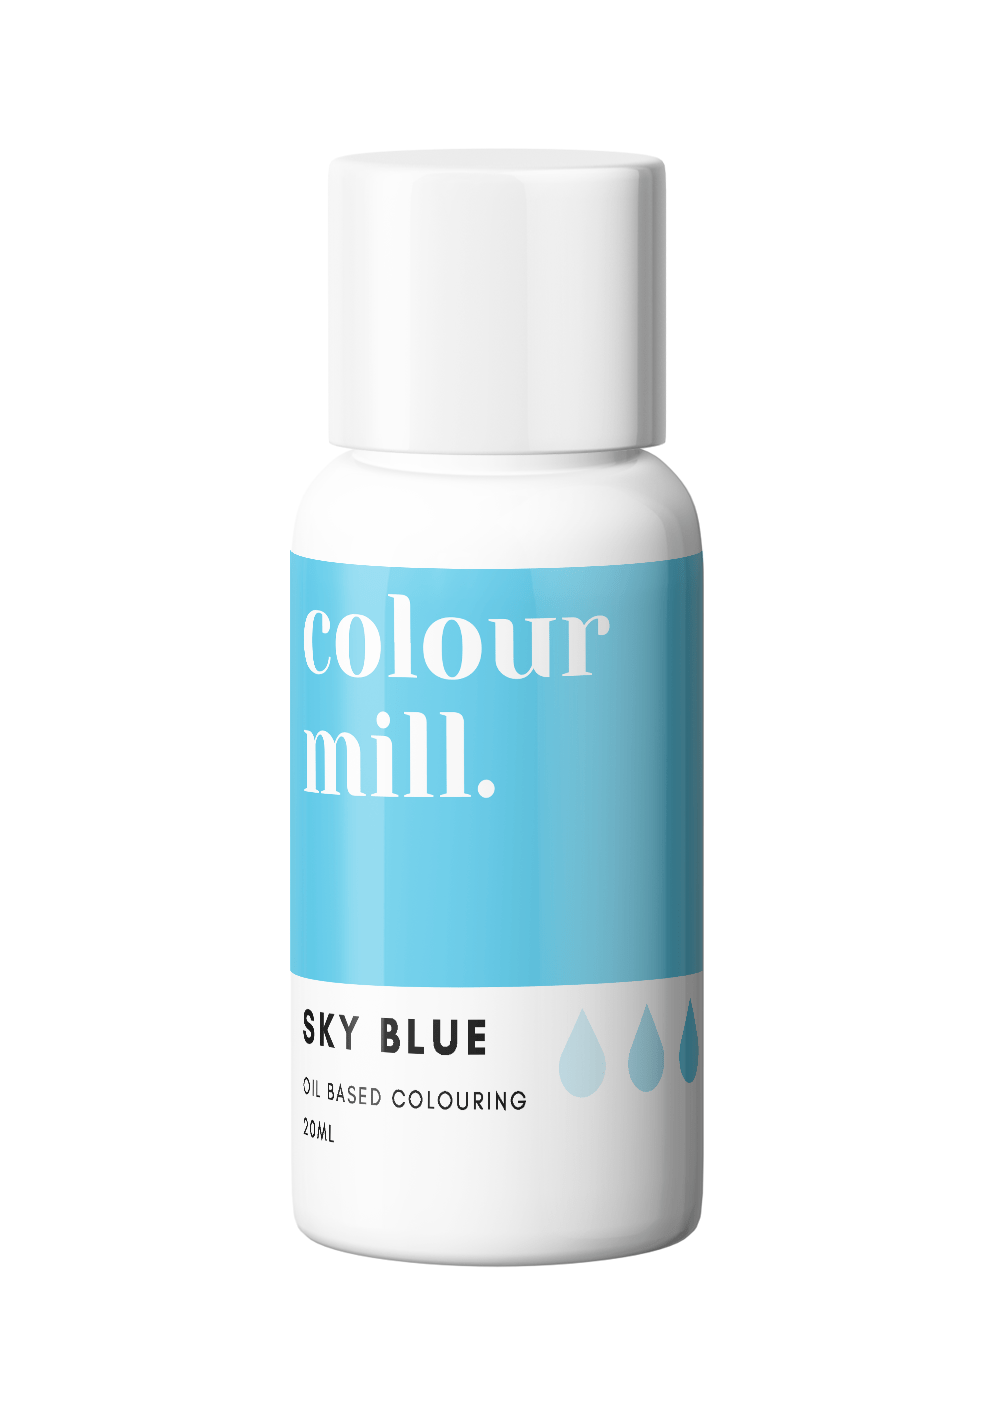 Χρώμα Πάστας - Γαλάζιο ουρανού - Oil Based - Colour Mill - Sky blue.